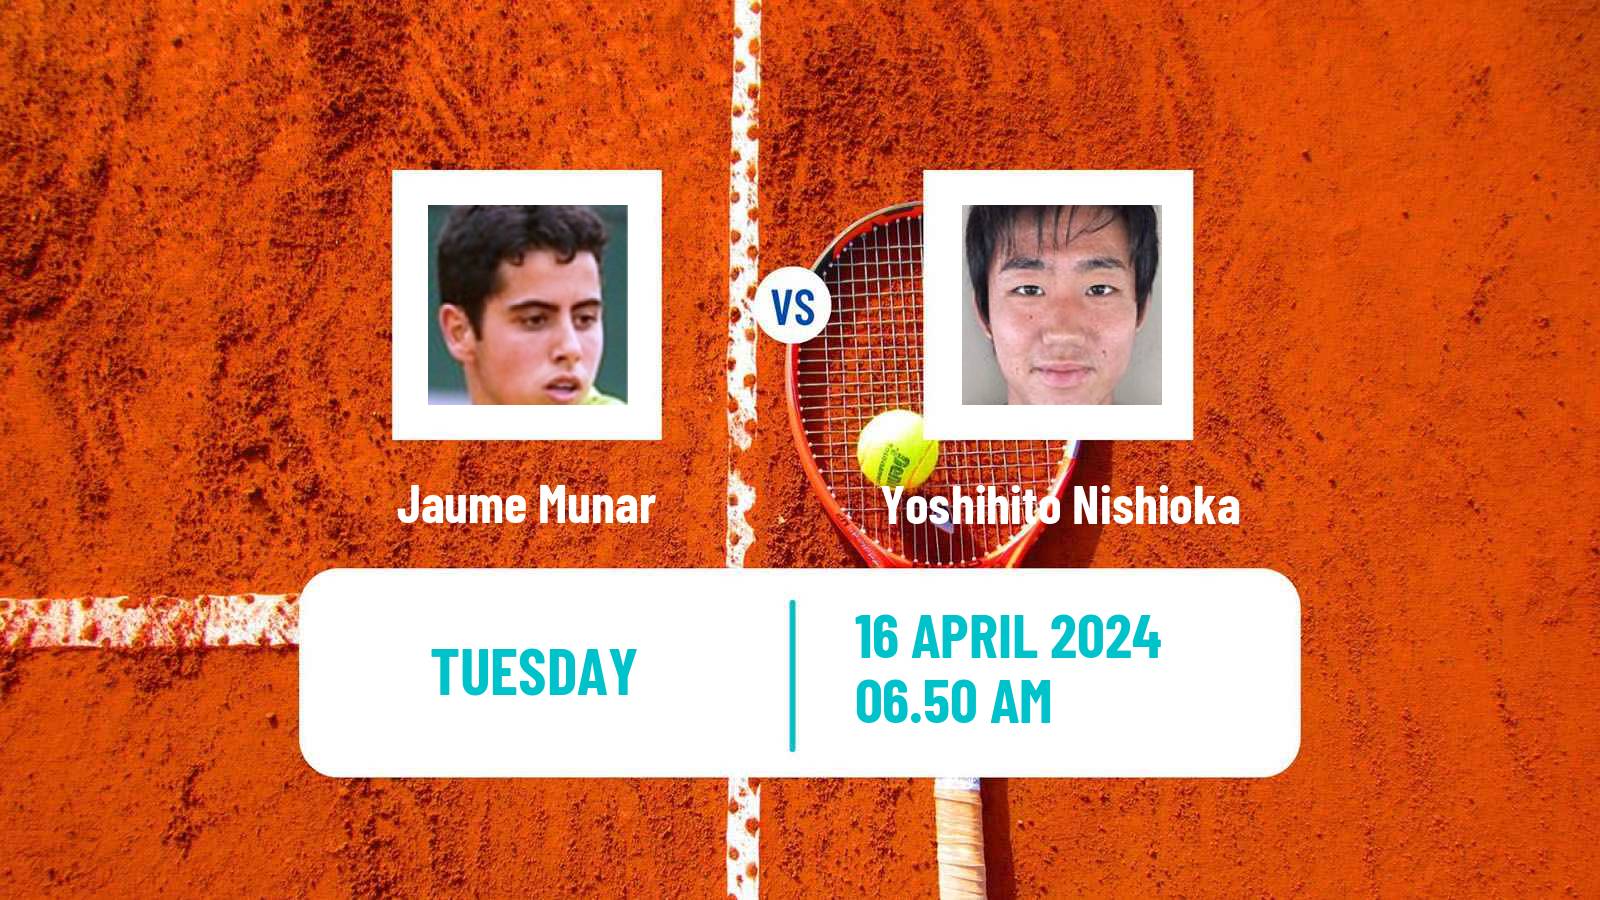 Tennis ATP Barcelona Jaume Munar - Yoshihito Nishioka